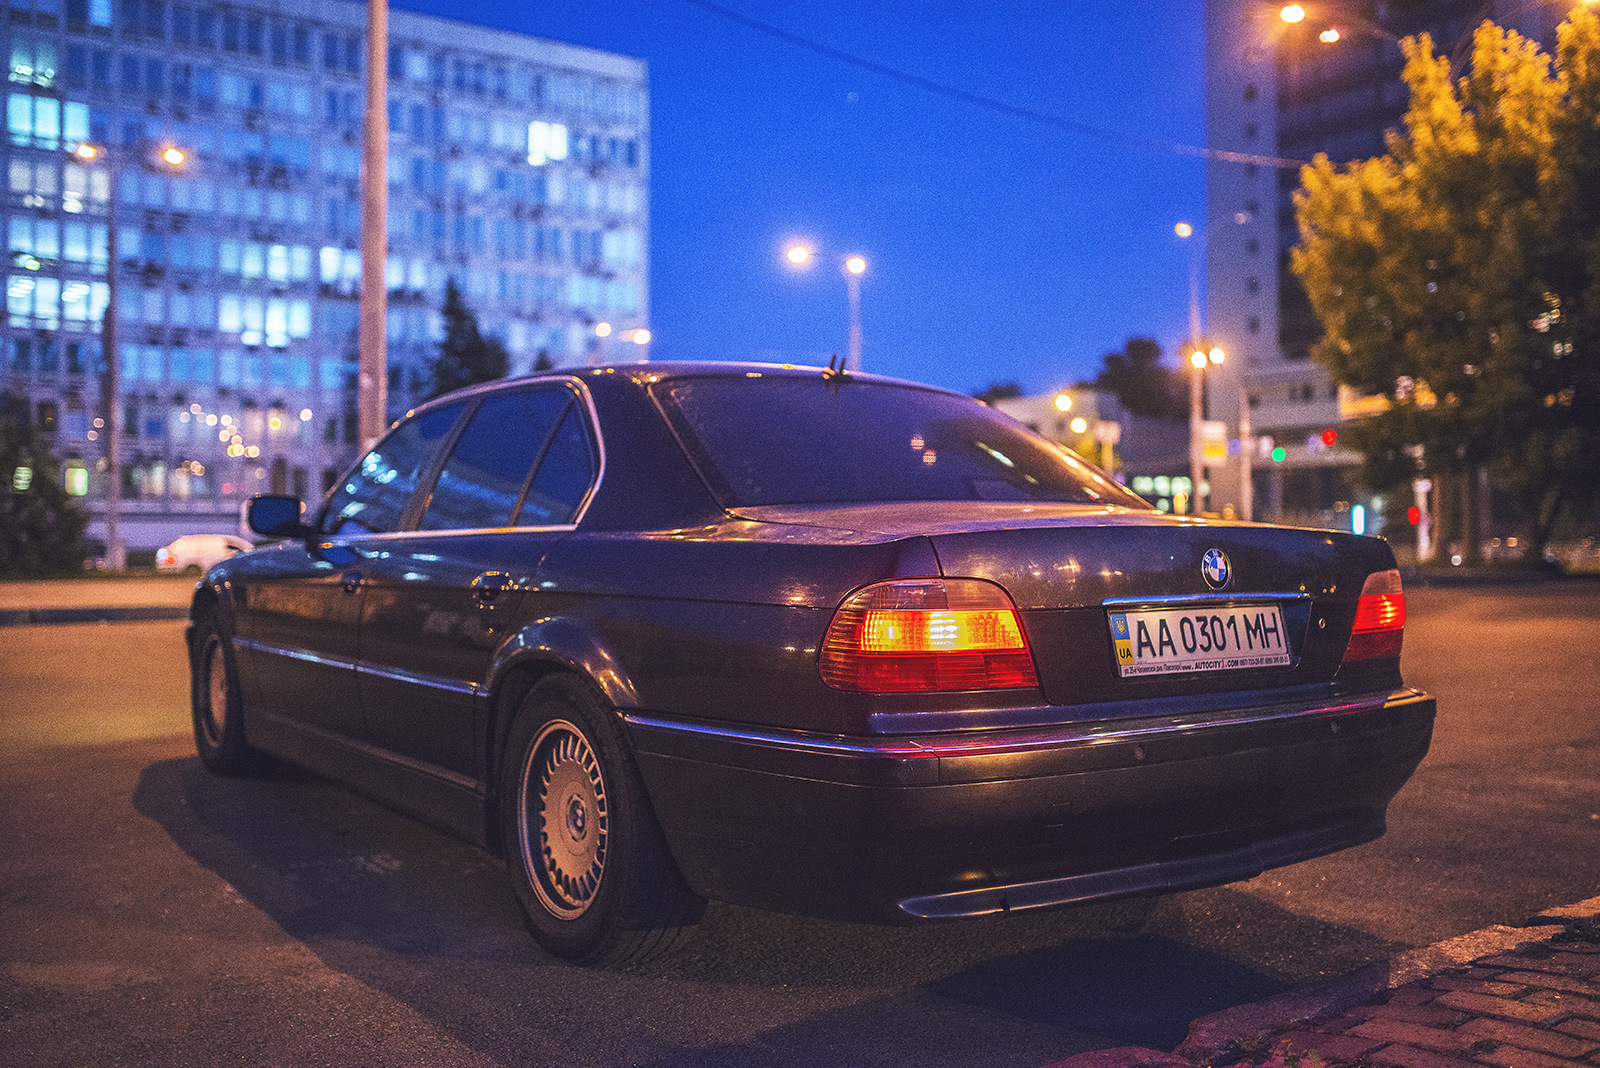 Беха беха семерка. БМВ 7 е38. BMW 7 Series (e38). BMW 730 e38. BMW 7 e38 1994.